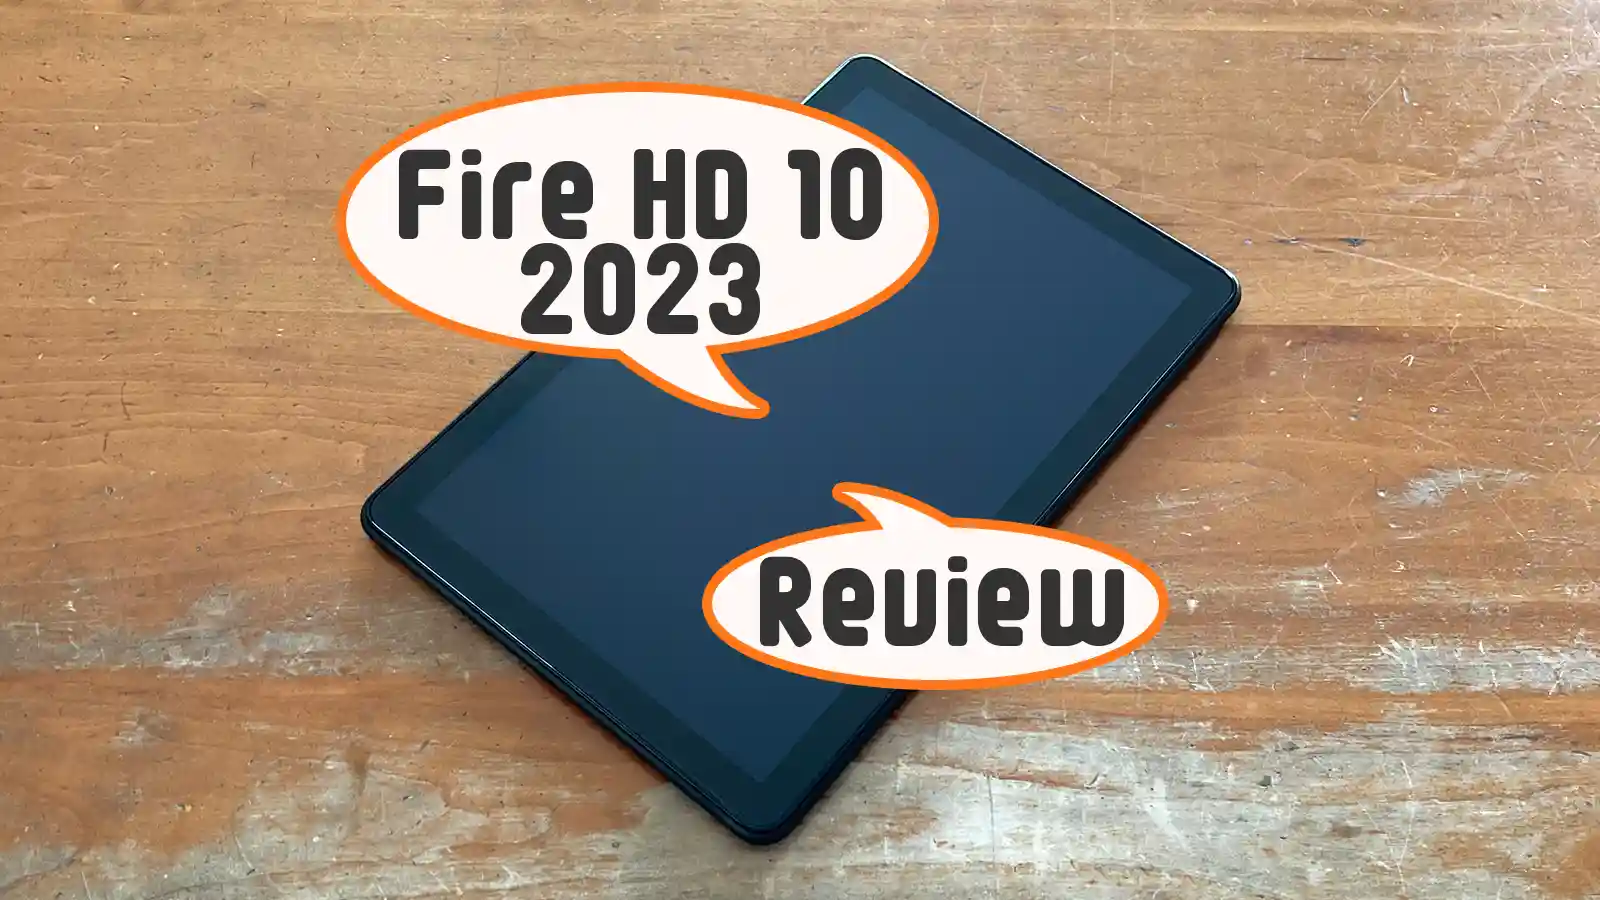 Amazon Fireタブレット Fire HD 10 第13世代 2023年モデル キッズモデル キッズプロ 新旧モデル 比較 レビュー